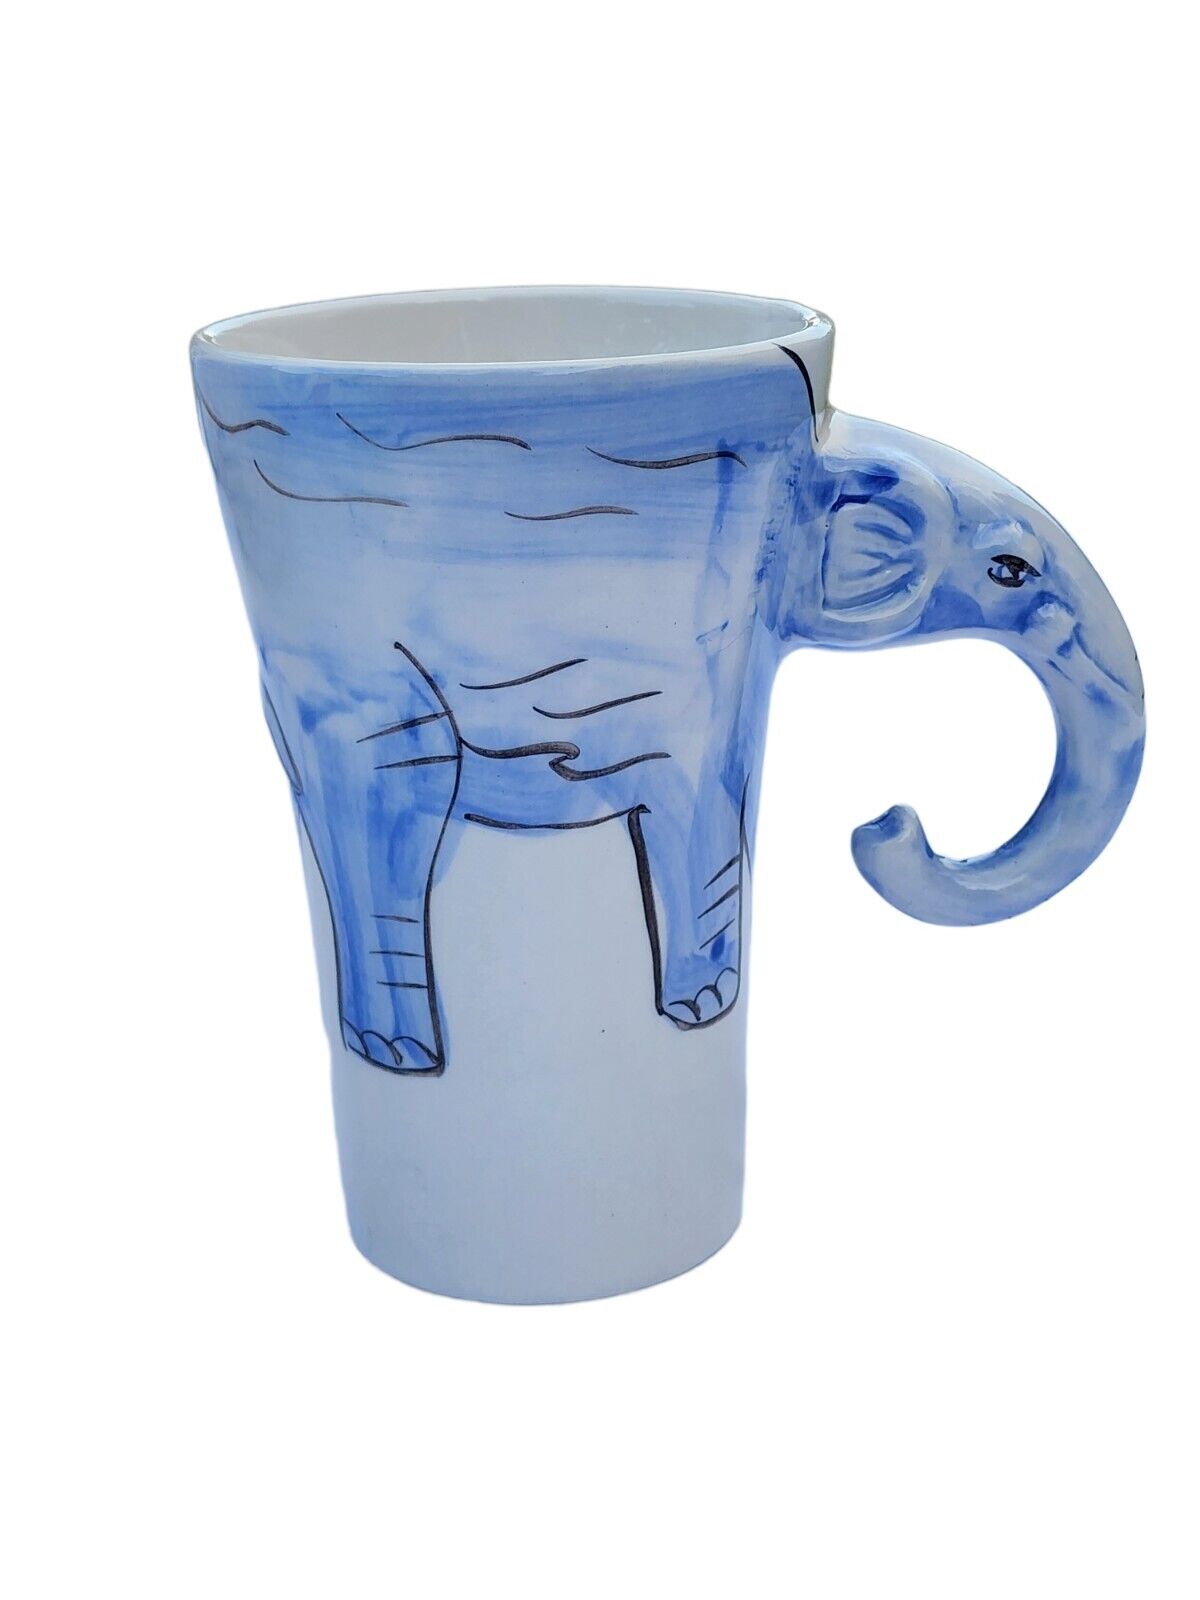 Hand Painted  Elephant  Coffee Tea Mug Cup 16 oz Sherwood Brand Blue White 